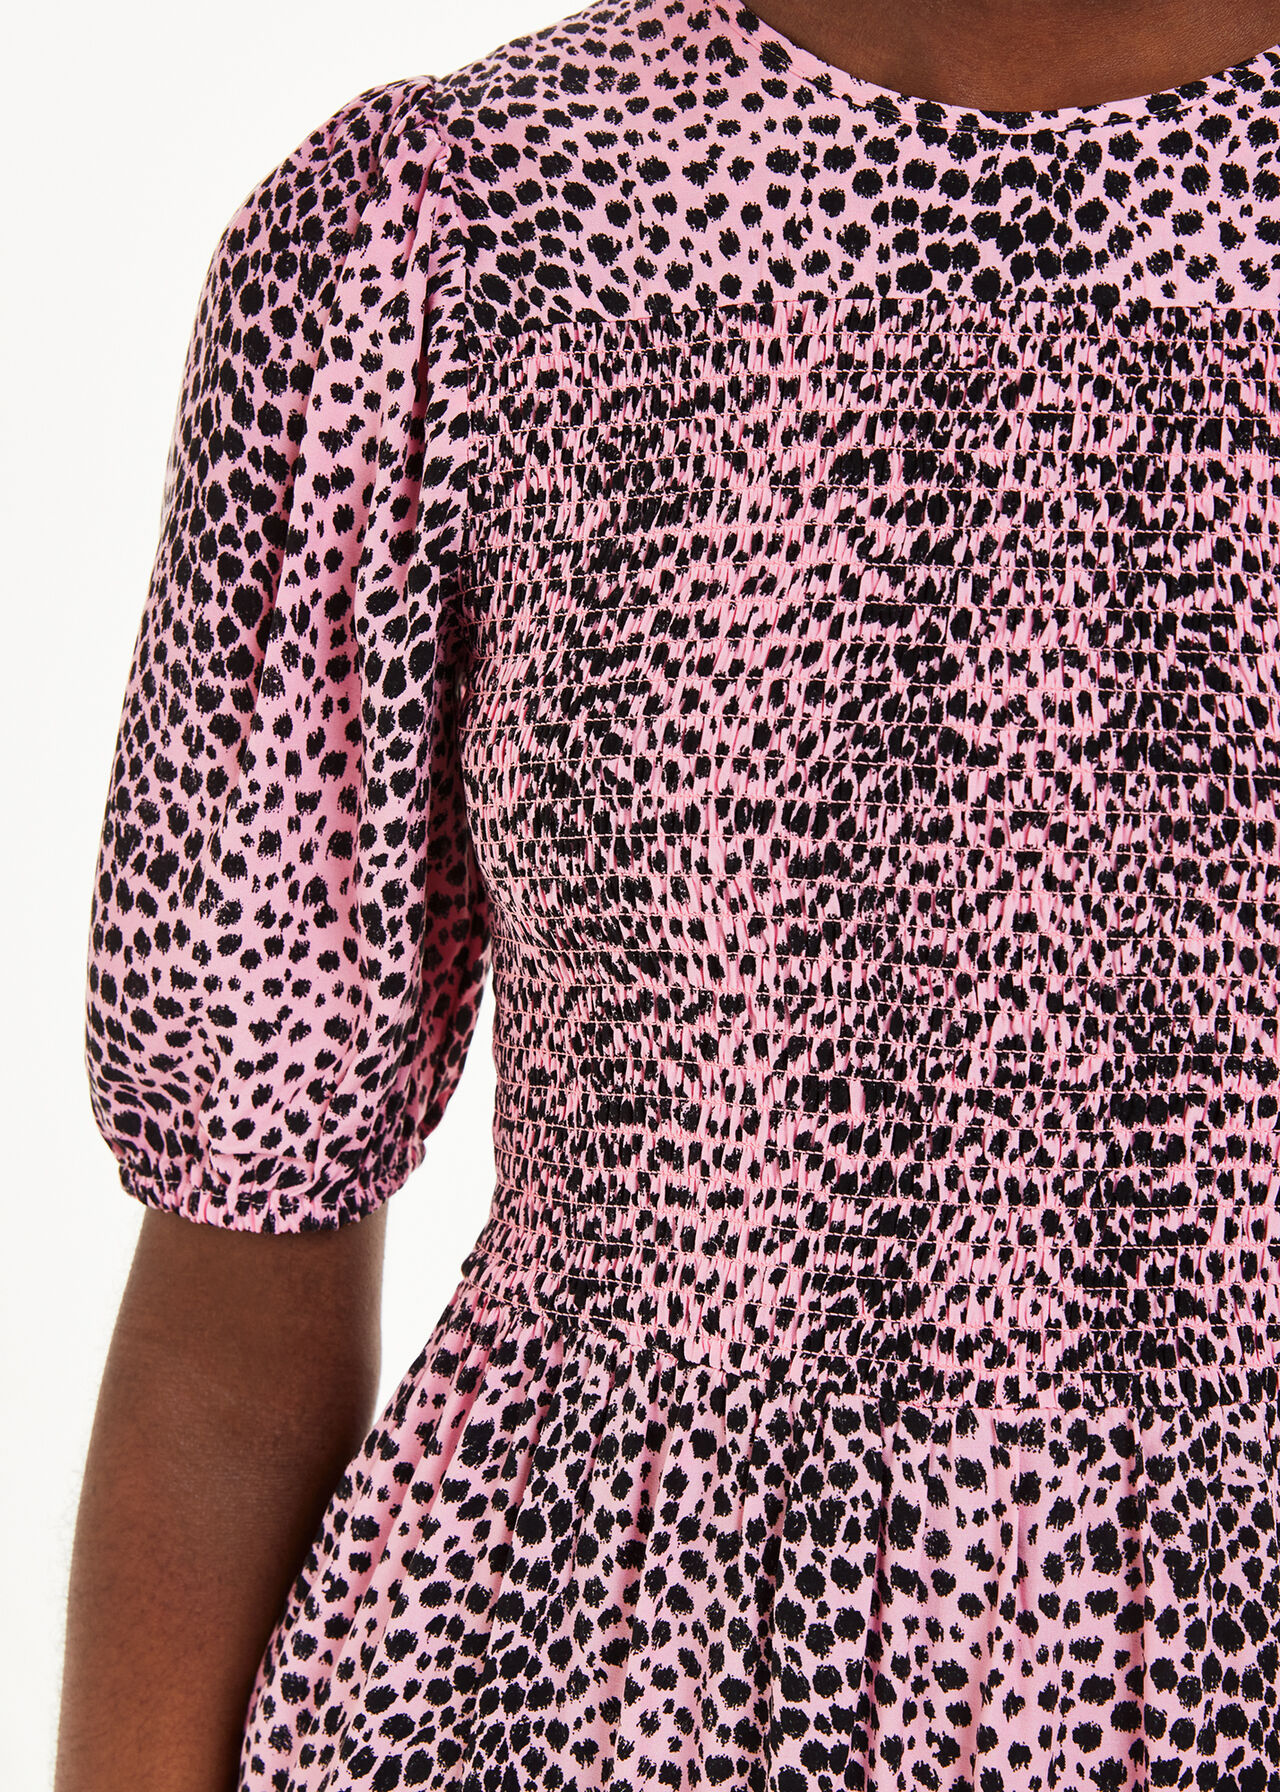 Sketched Cheetah Dress